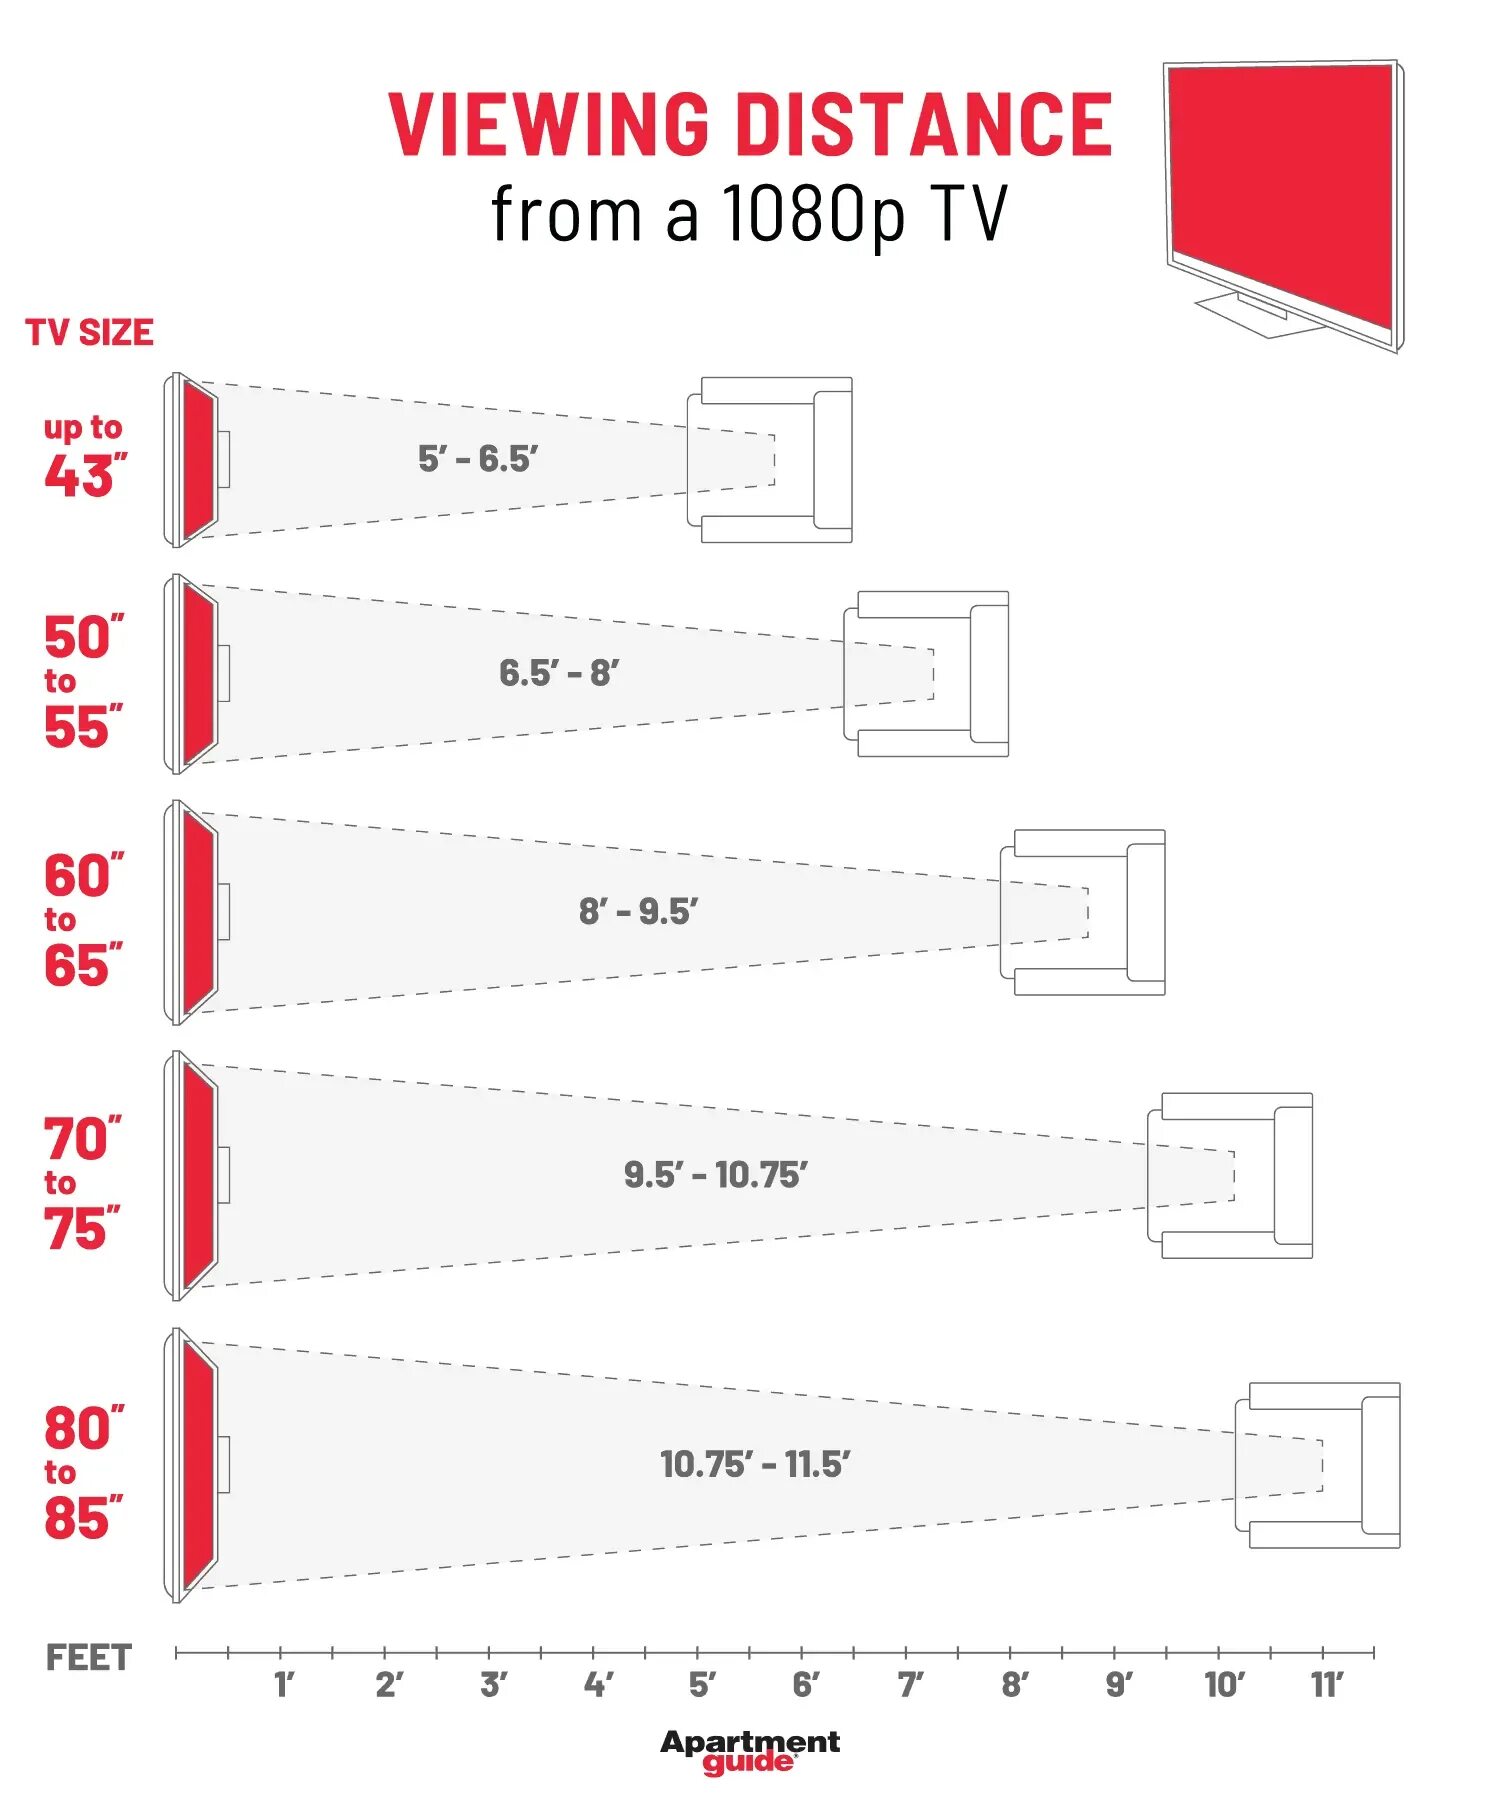 Расстояние до телевизора. Размер ТВ от расстояния до дивана. Расстояние от ТВ до дивана. Размер телевизора по расстоянию. Расстояние от телевизора до стены